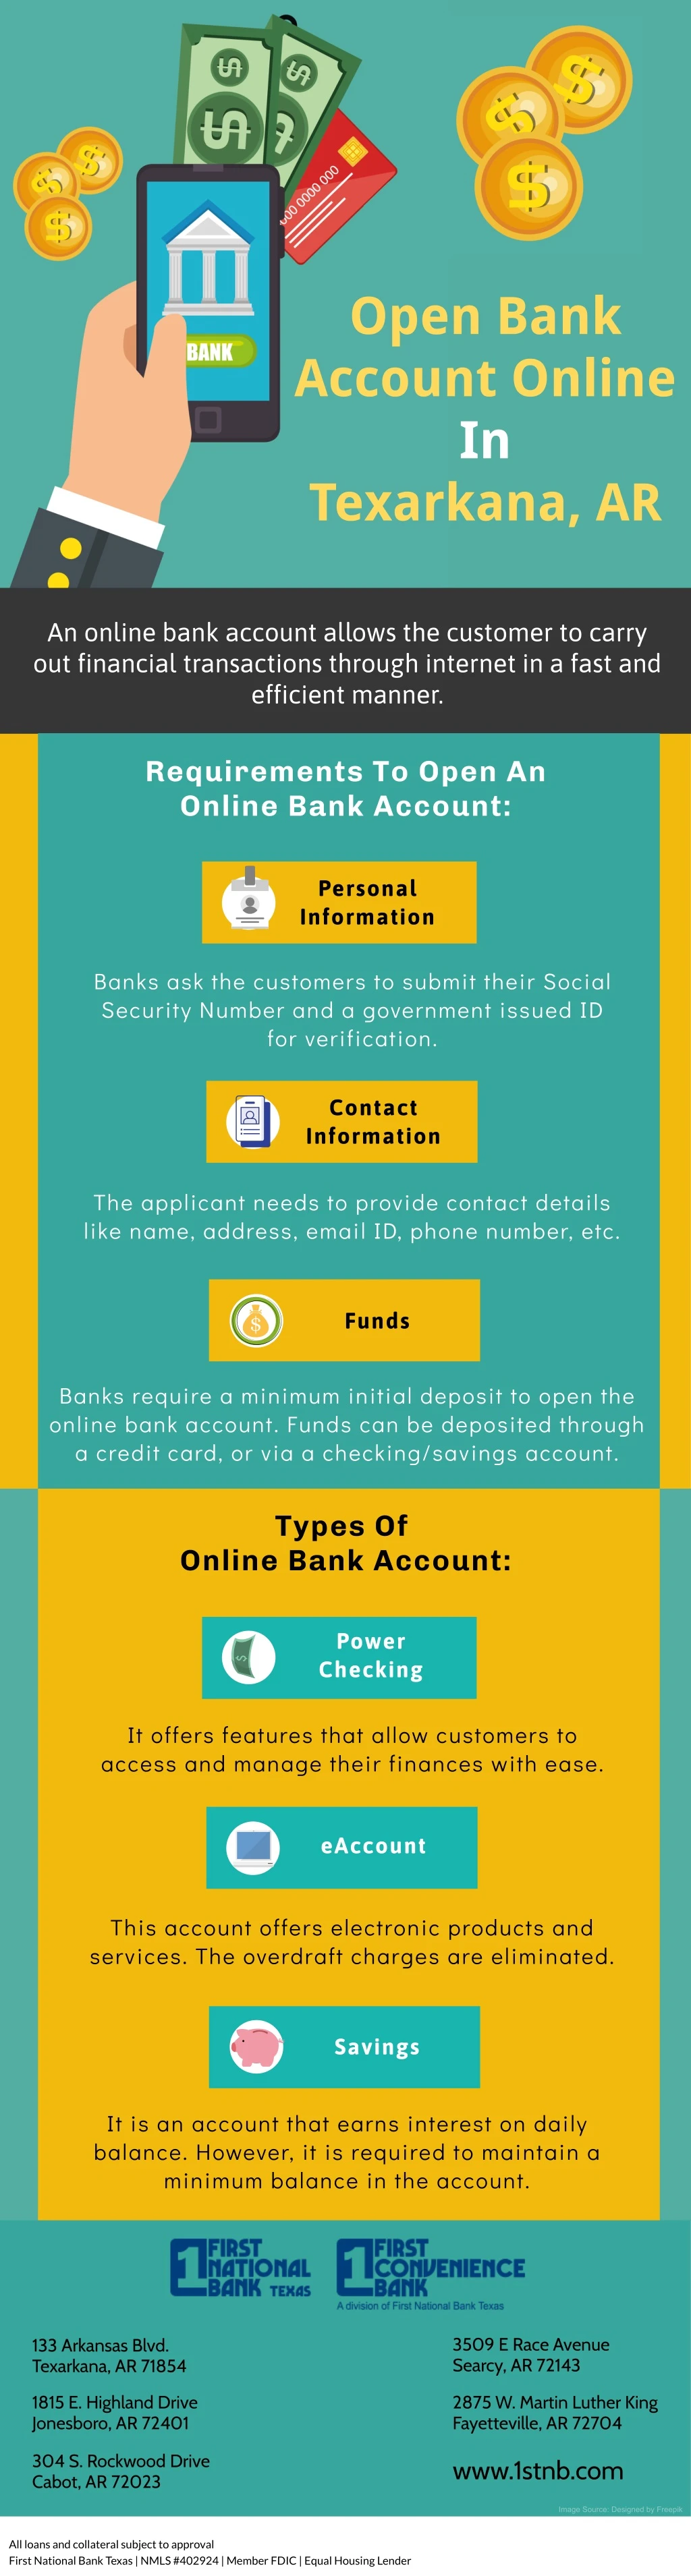 open bank account online in texarkana ar